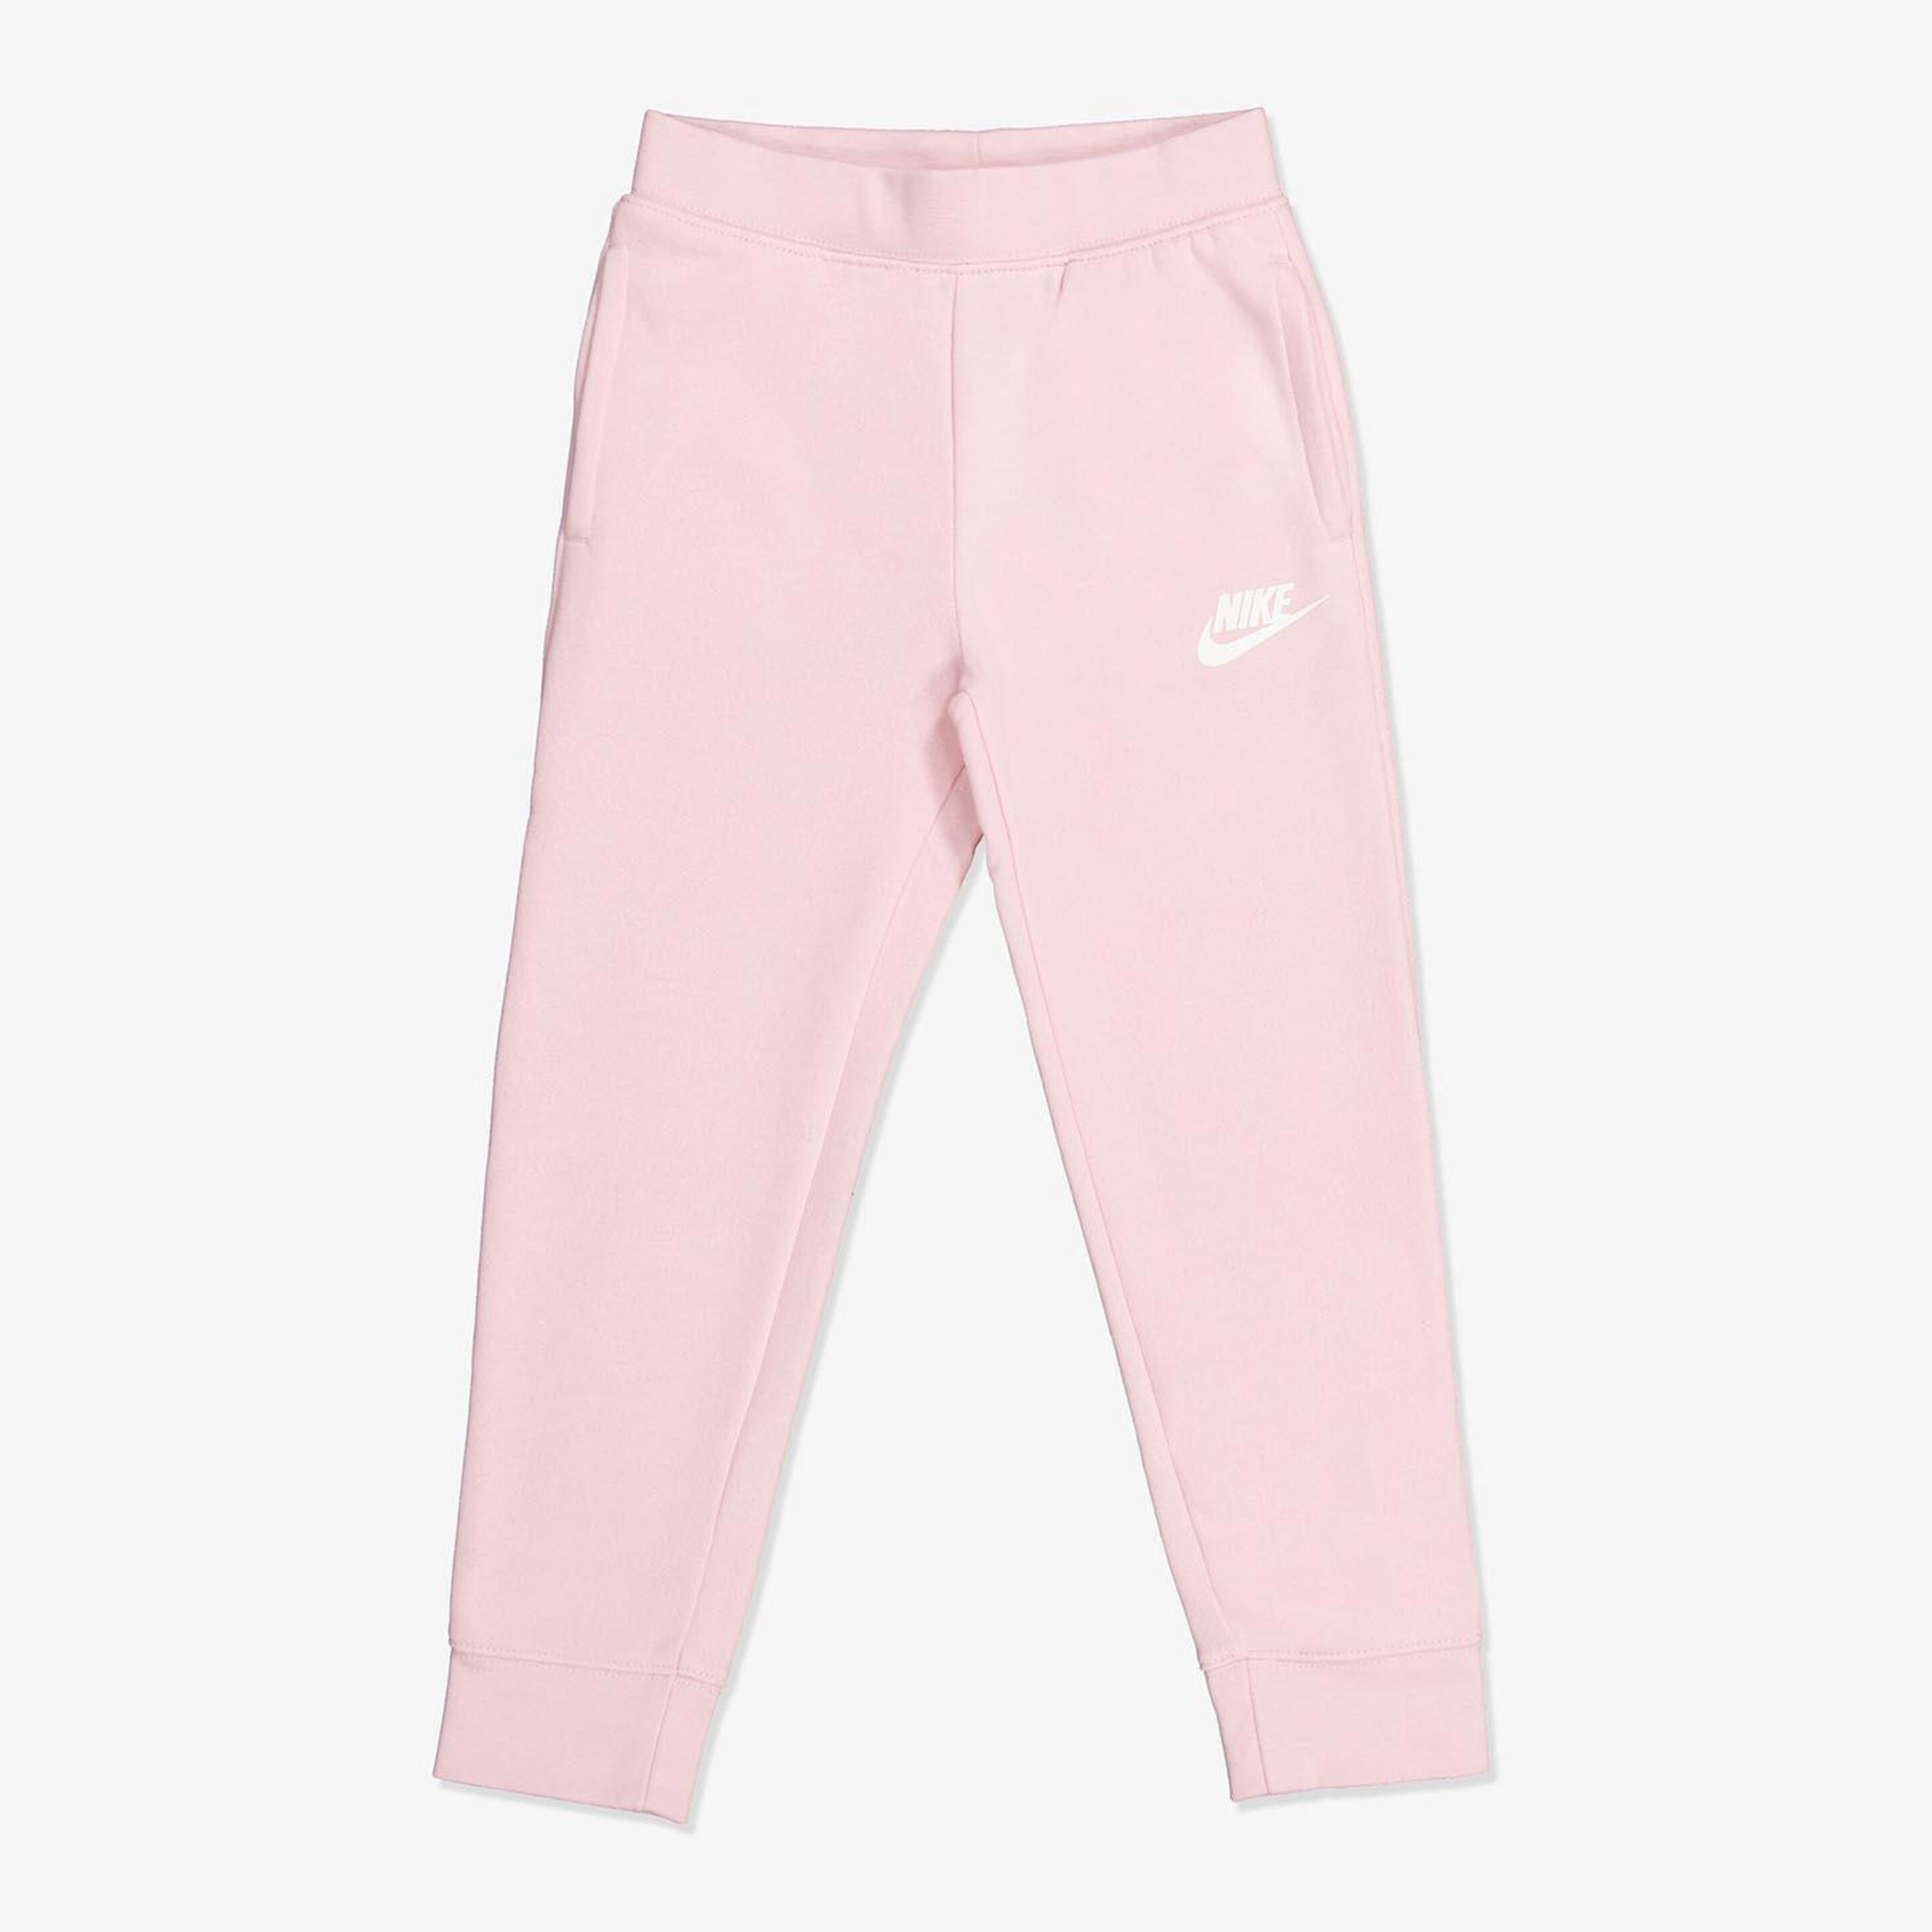 Calças Nike - rosa - Calças Menina